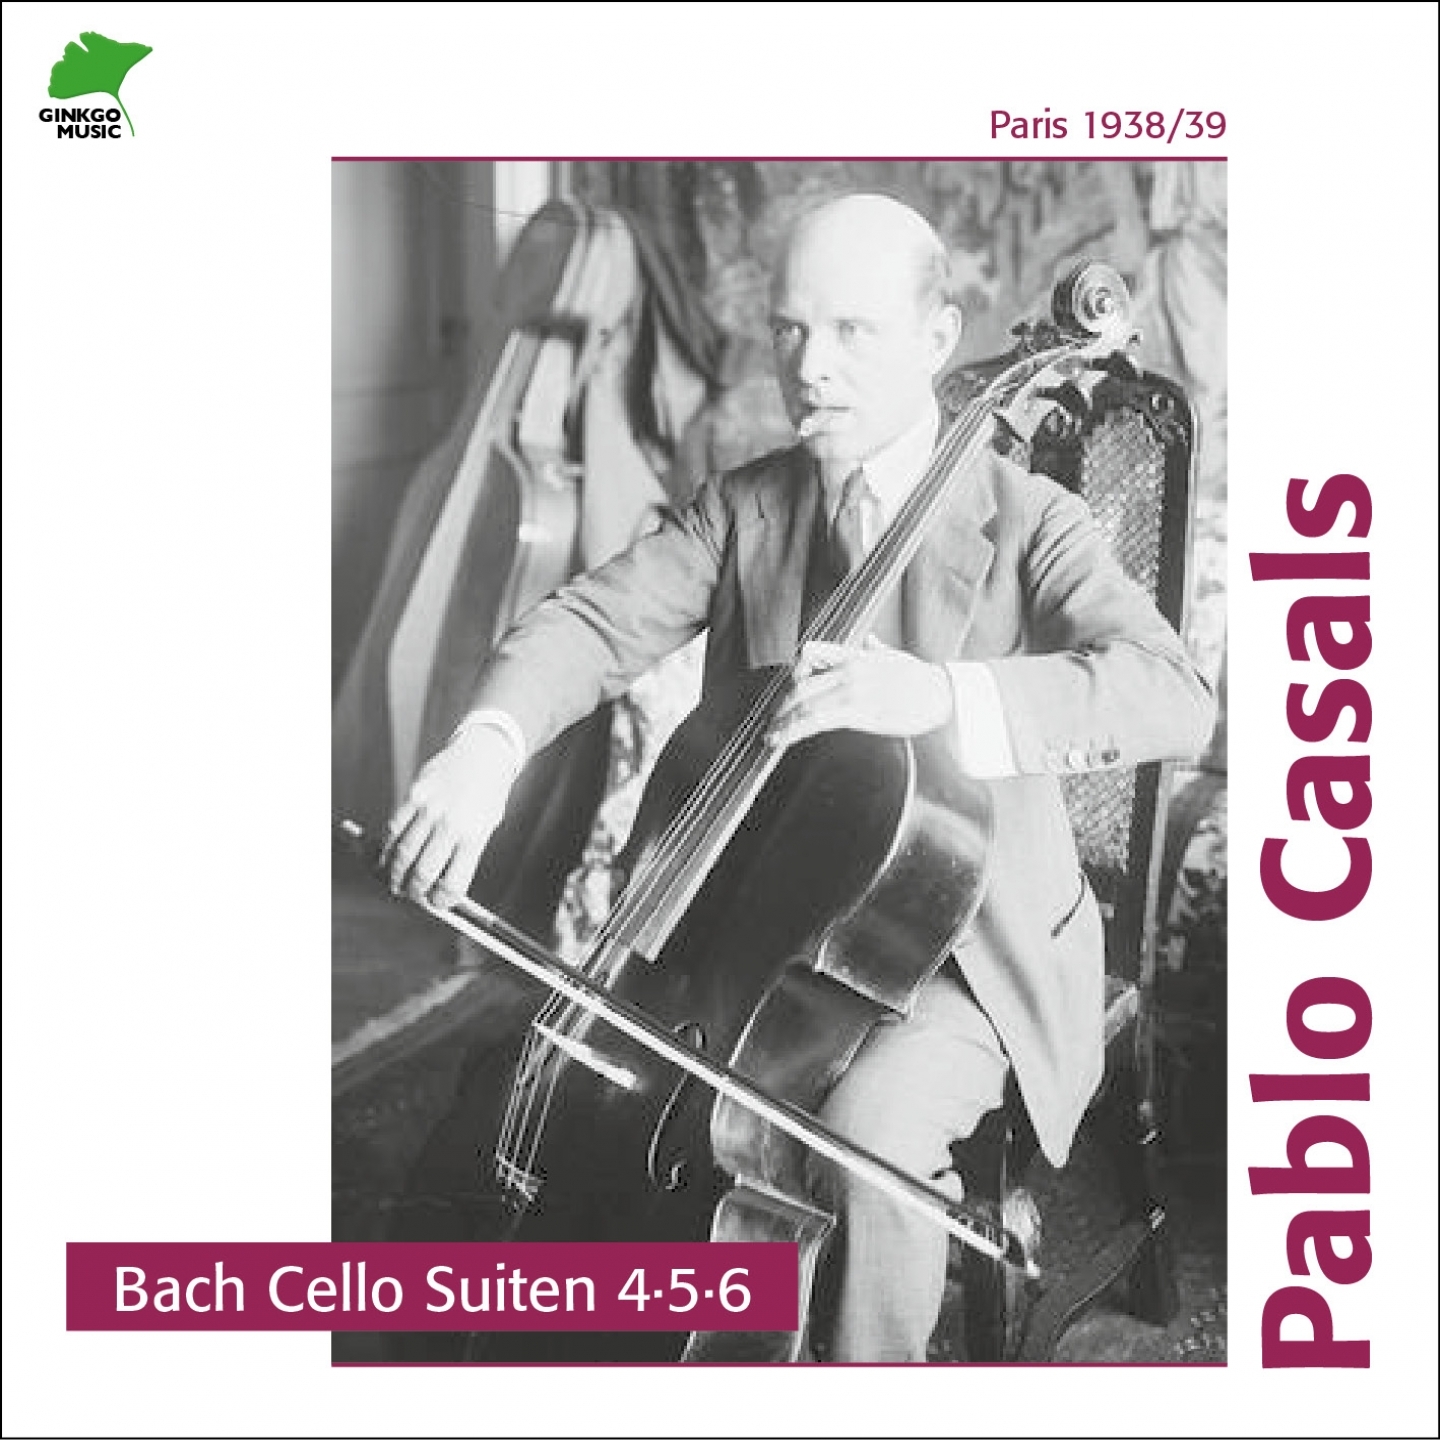 Cello Suite No. 6, in D Major, BWV 1012 Pre lude